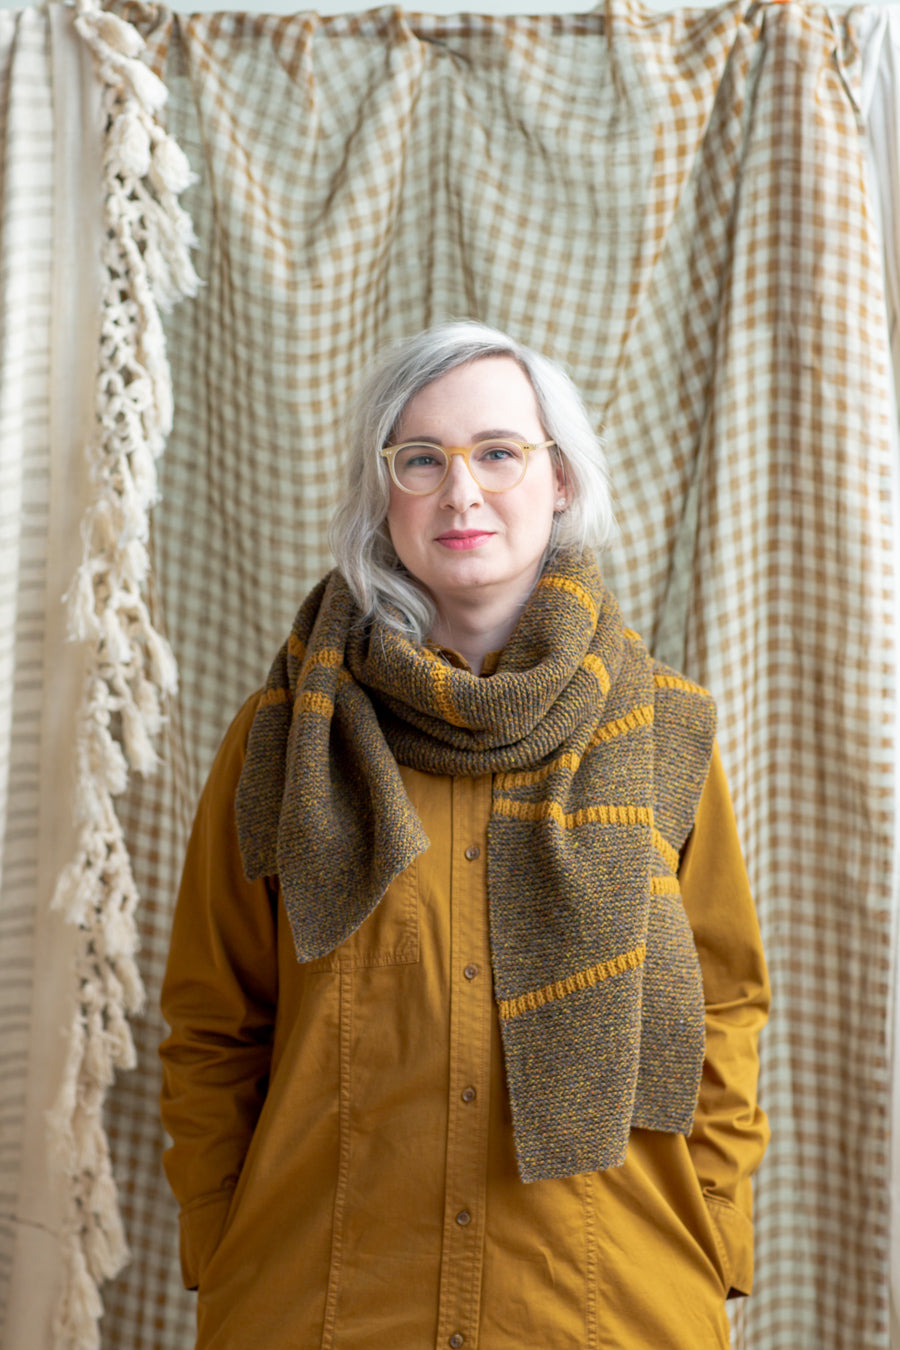 Tallera Scarf | Knitting Pattern by Cecilia Flori | Brooklyn Tweed